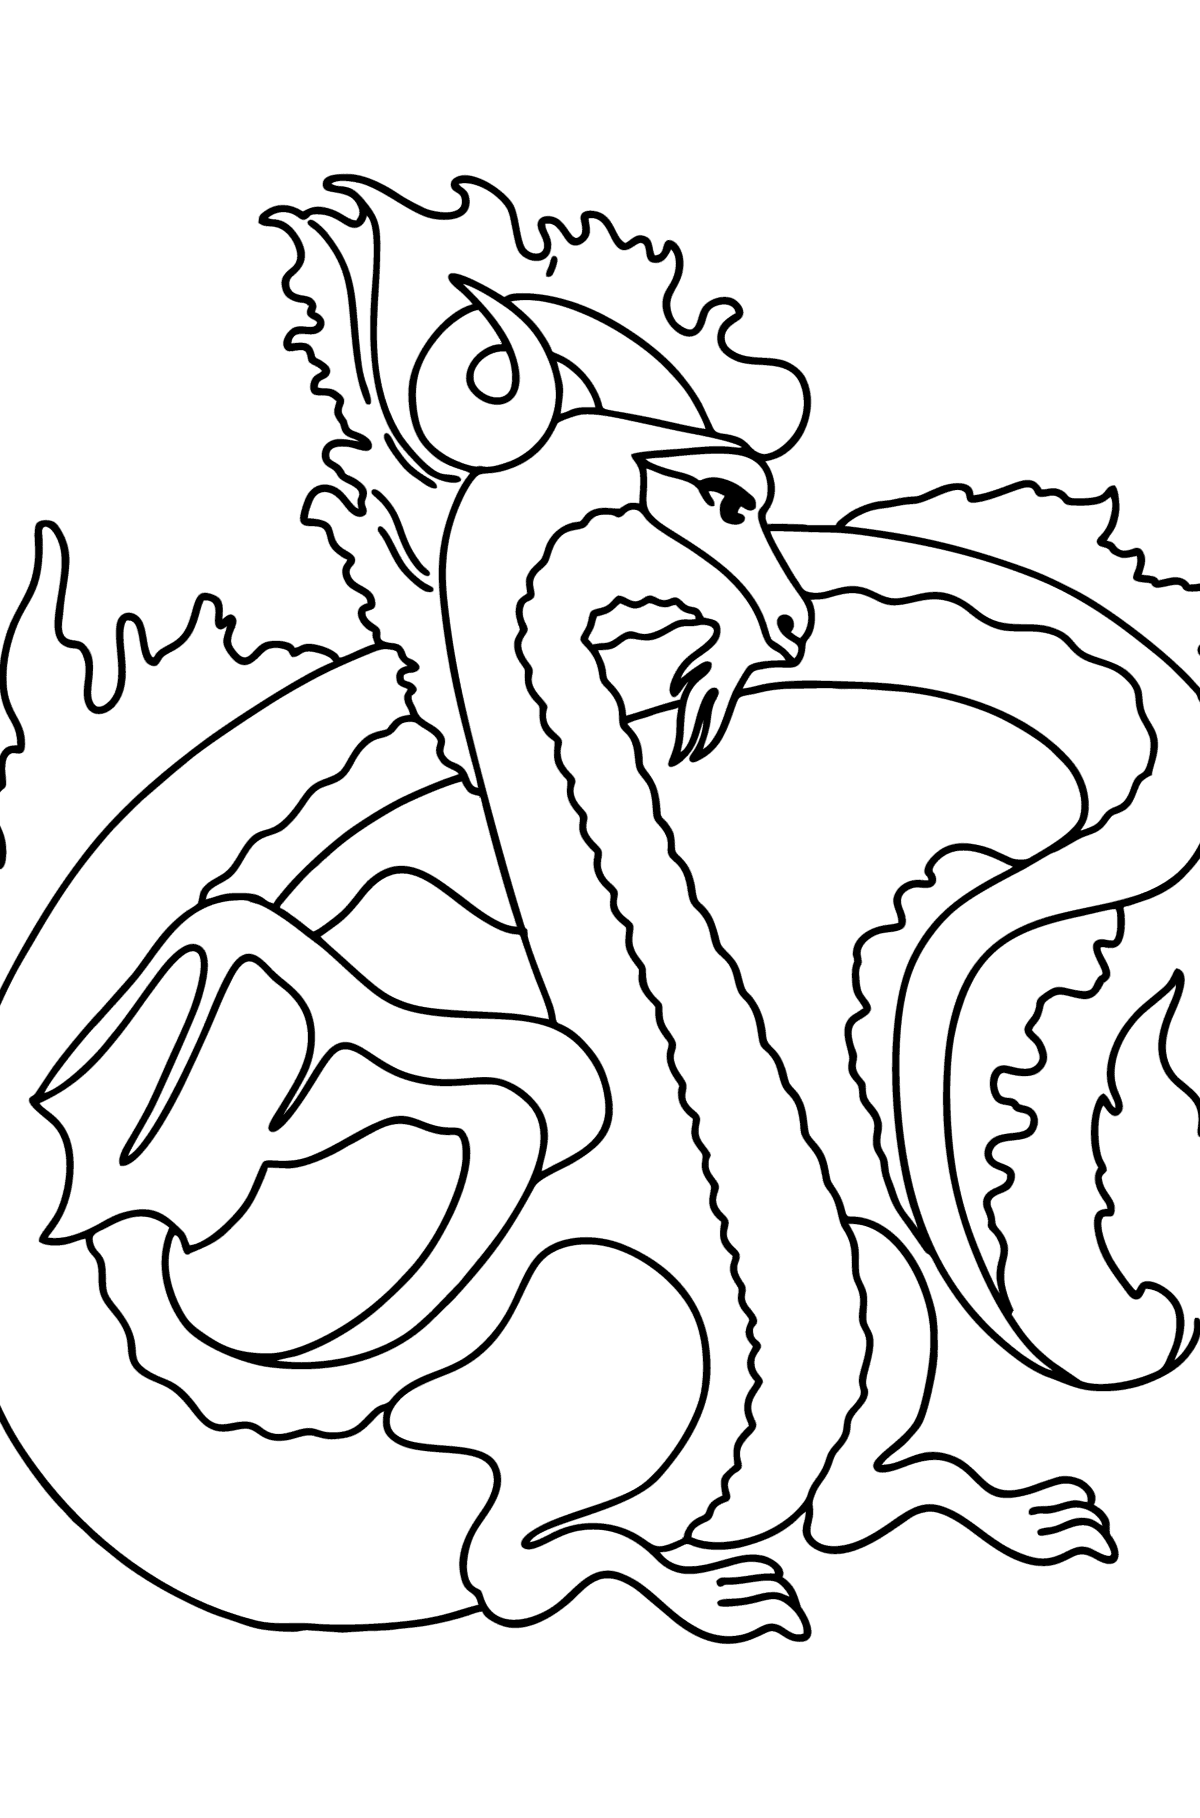 Coloriage - Dragon mythique - Coloriages pour les Enfants